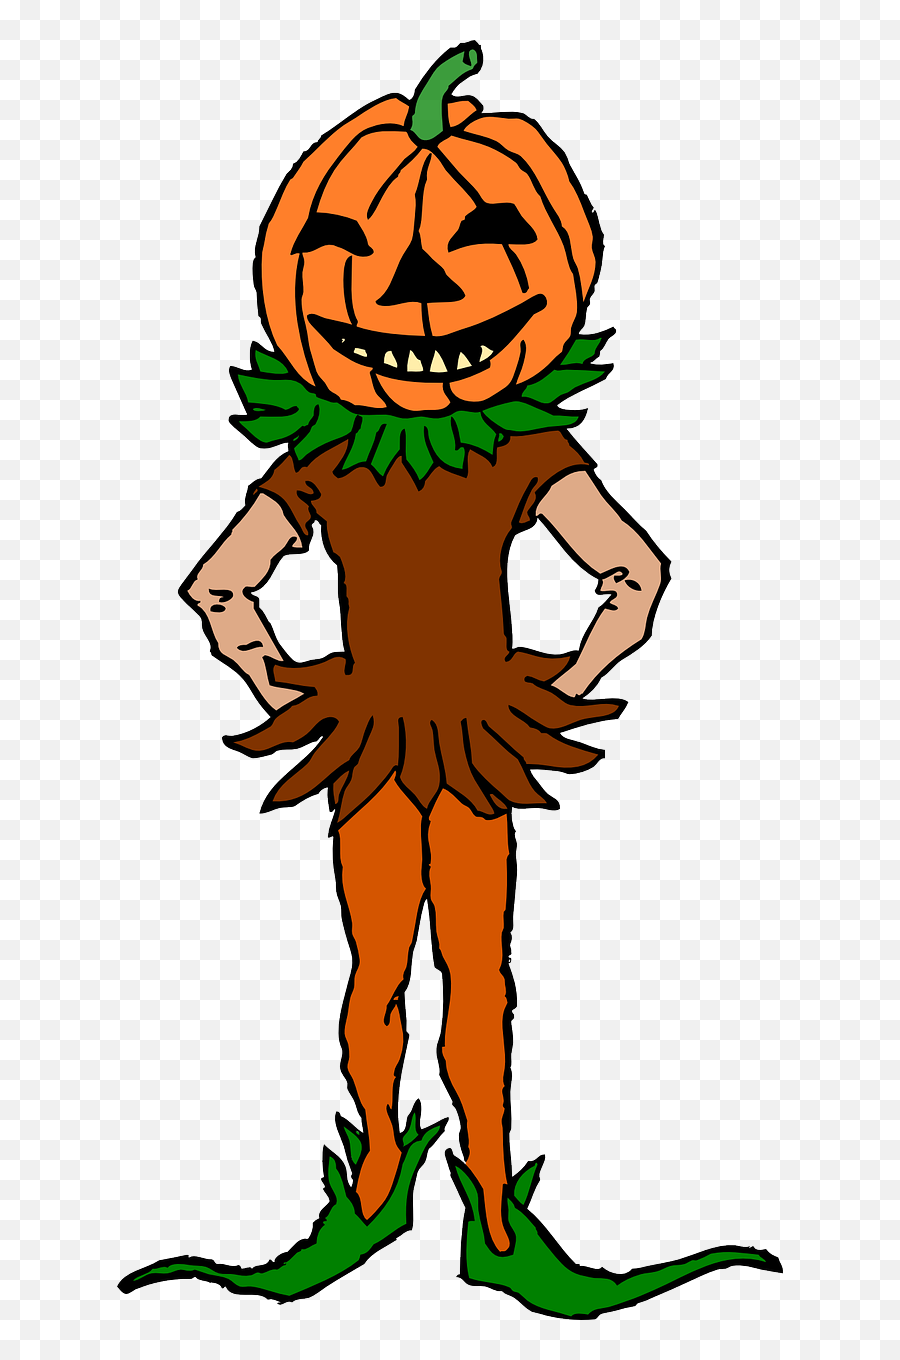 More Halloween Clip Art - Pumpkin Head Clip Art Png Pumpkin People Halloween Cartoon Emoji,Halloween Pumpkin Clipart